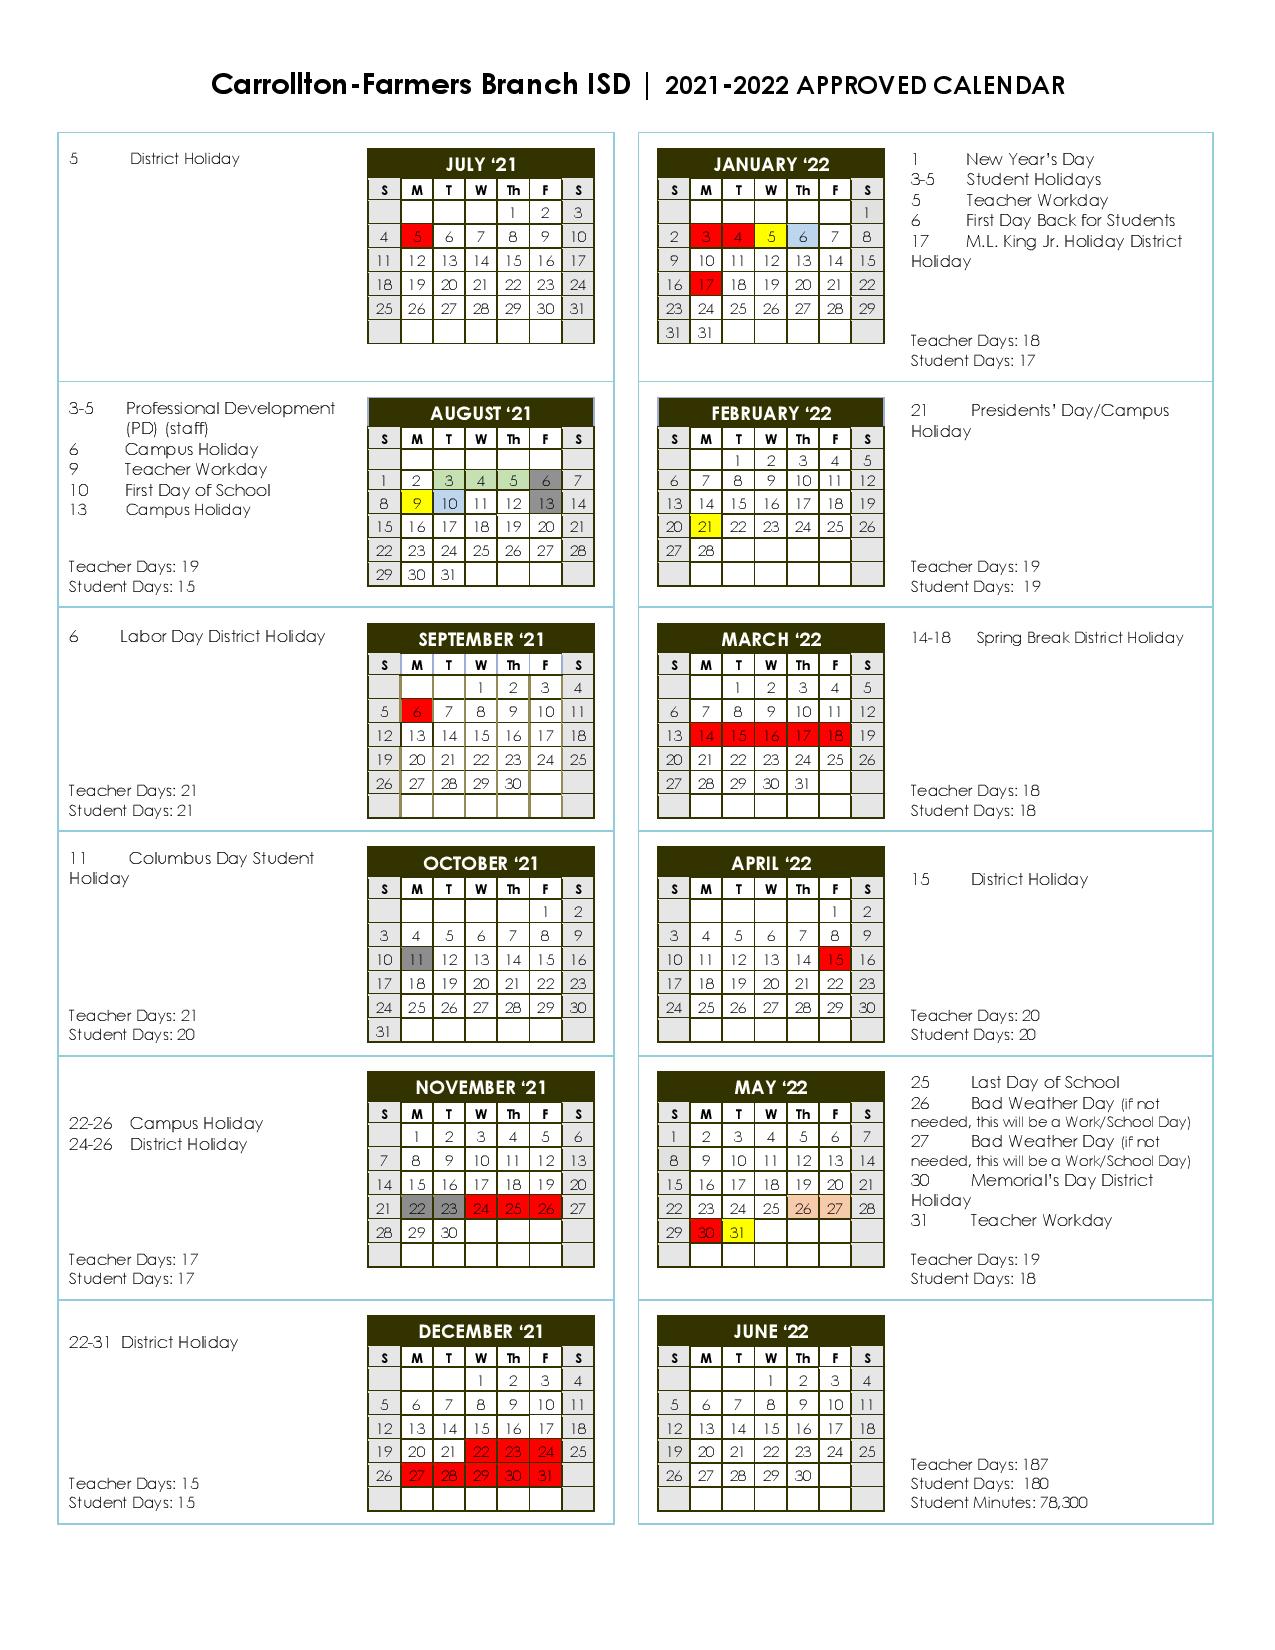 Cfbisd Calendar 2022 23 Carrollton-Farmers Branch Independent School Calendar 2021-2022